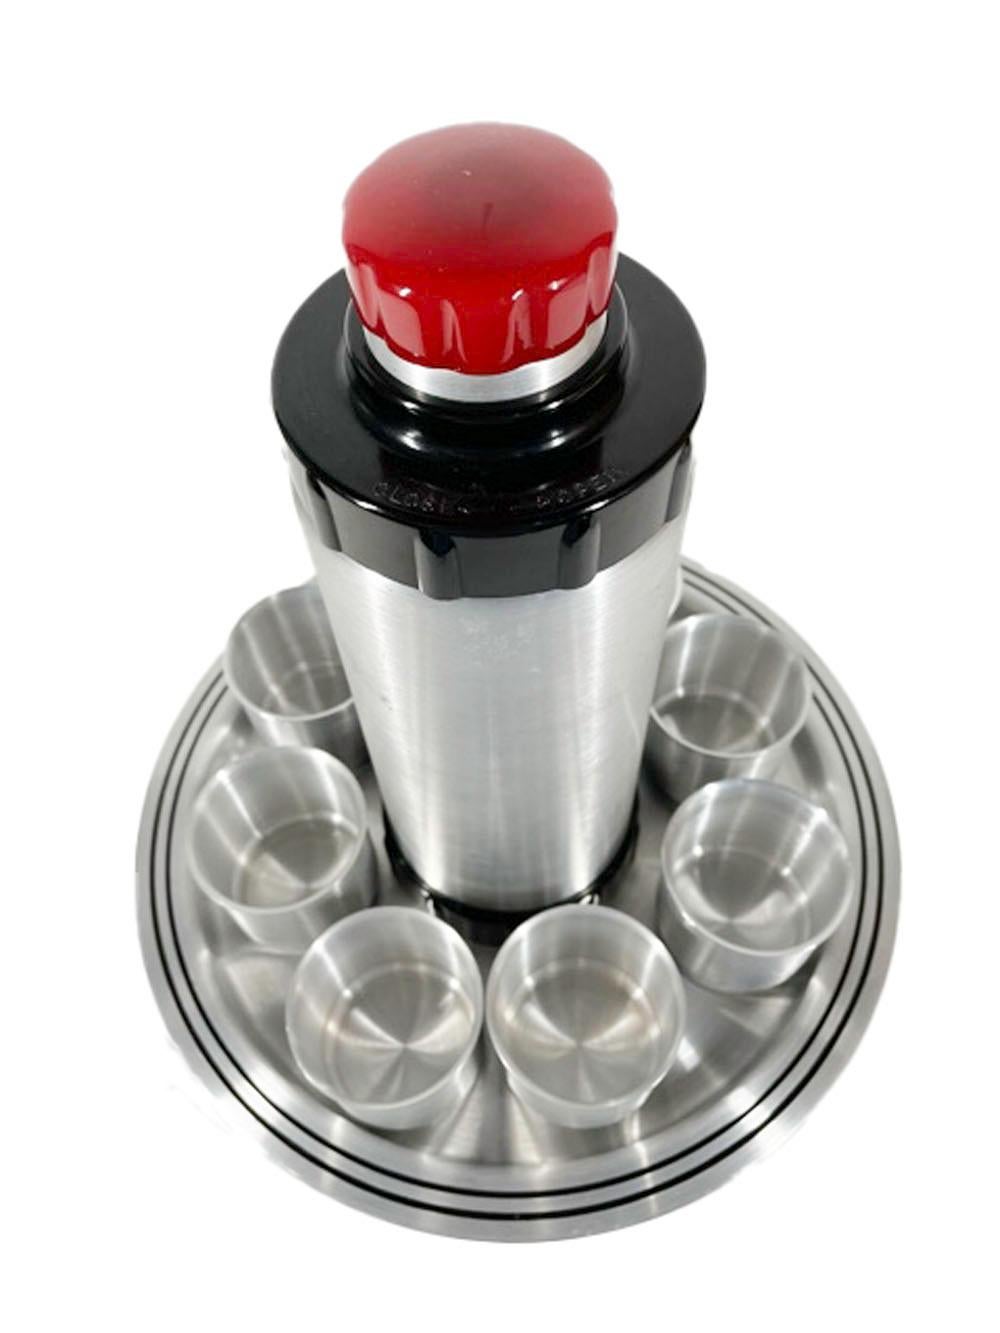 Cocktailshaker-Set aus gebürstetem Aluminium und Bakelit im Art-Deco-Stil. Der Shaker hat einen Fuß aus schwarzem Bakelit und einen Schraubverschluss mit einer roten Kappe aus Bakelit und Aluminium, die auch als Jigger dient, während das